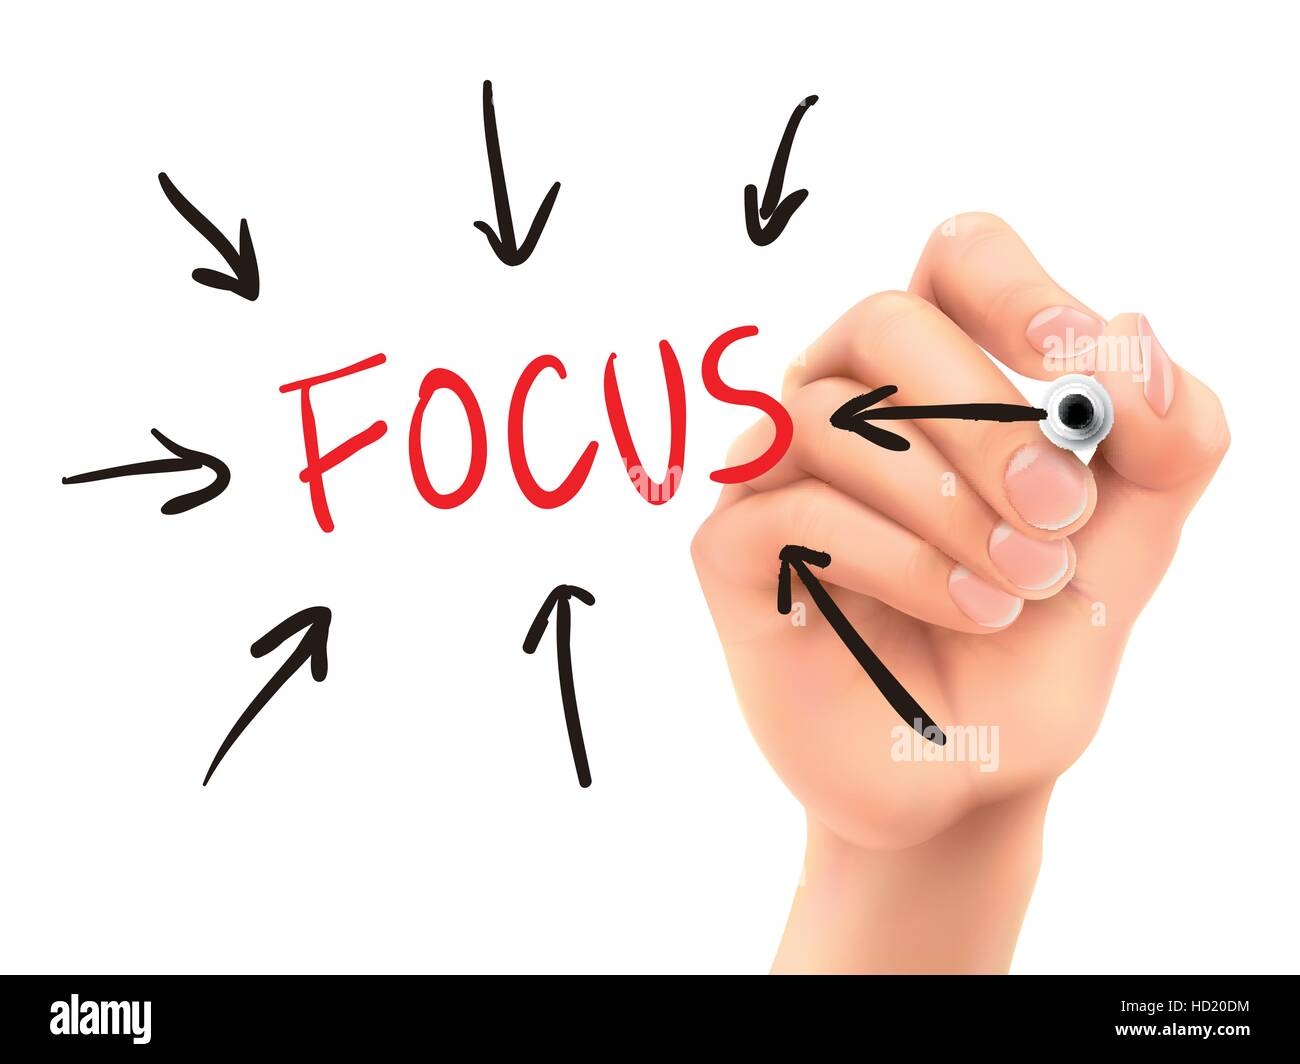 Focused attention. Фокус внимания. Фокус внимания картинка. Фокус внимания картинка для презентации. Фокус на результат картинка.